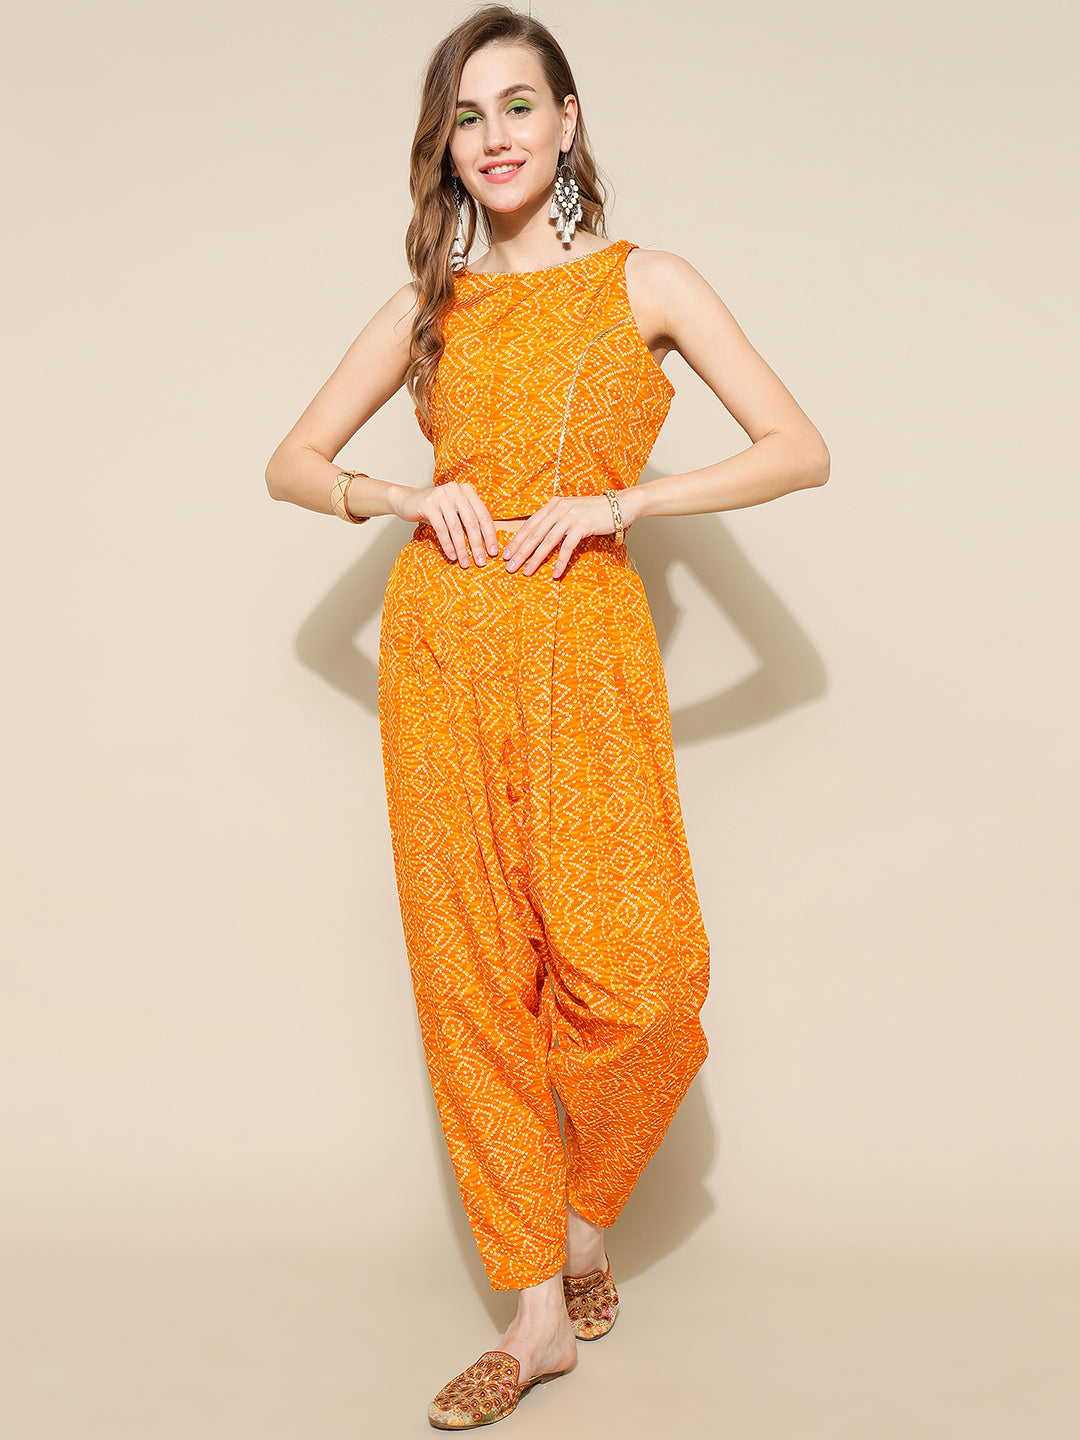 ANUSHIL Elegant Chundri Co-ord Set for Women - Perfect Ethnic Ensemble - Trendy Two-Piece Outfits(Yellow)